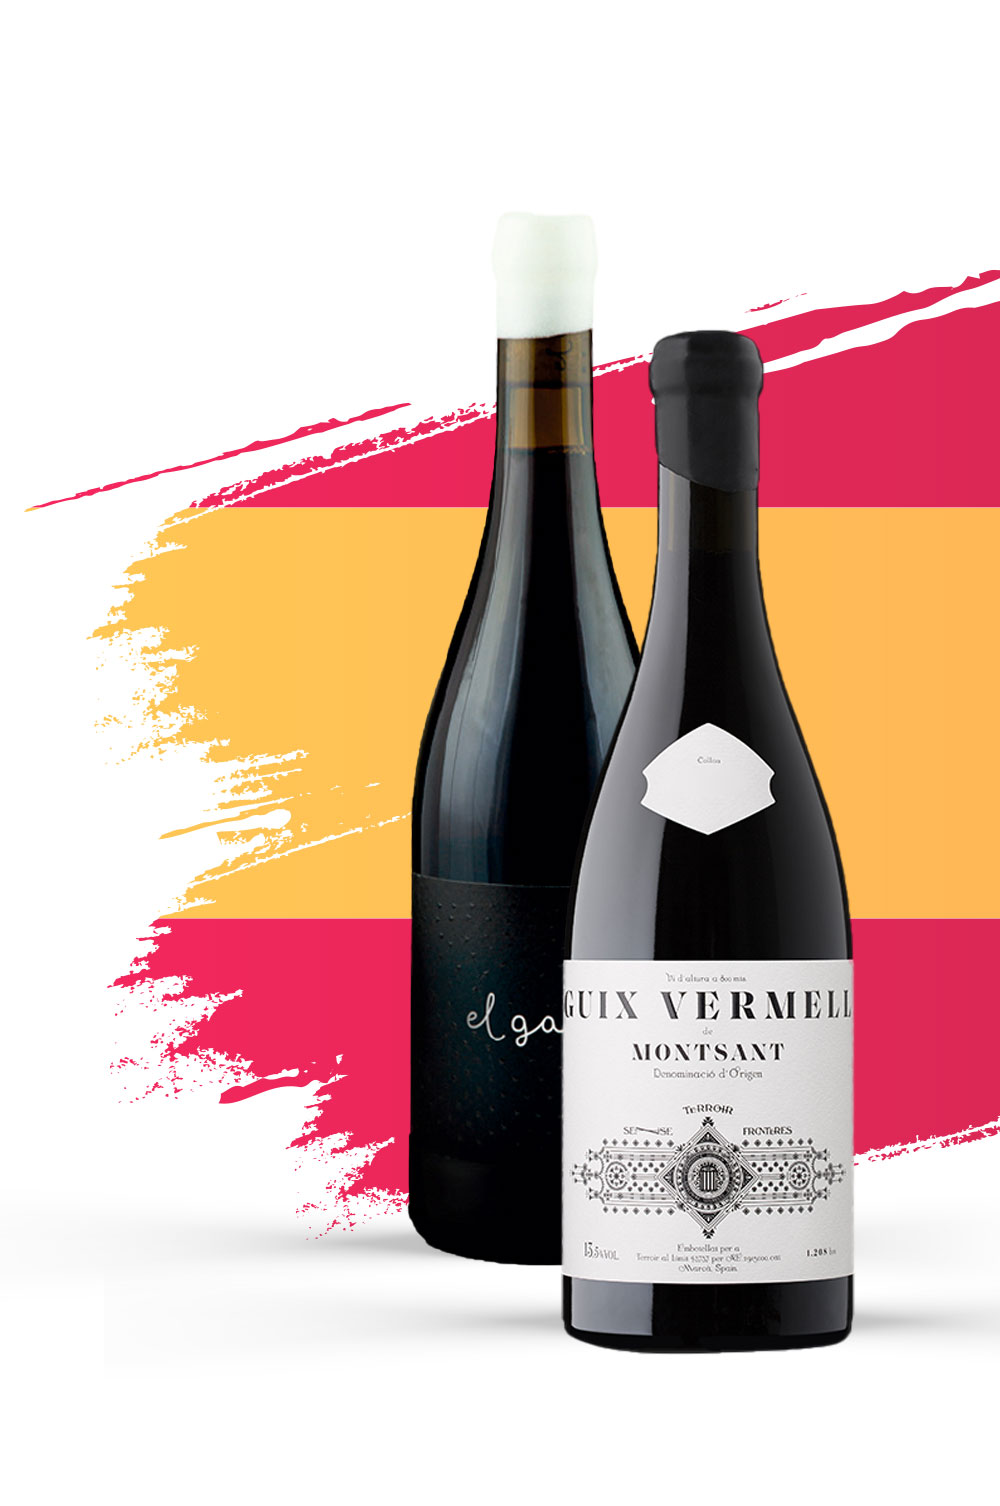 Le 23 avril est une journée pour déguster les meilleurs vins d’Espagne